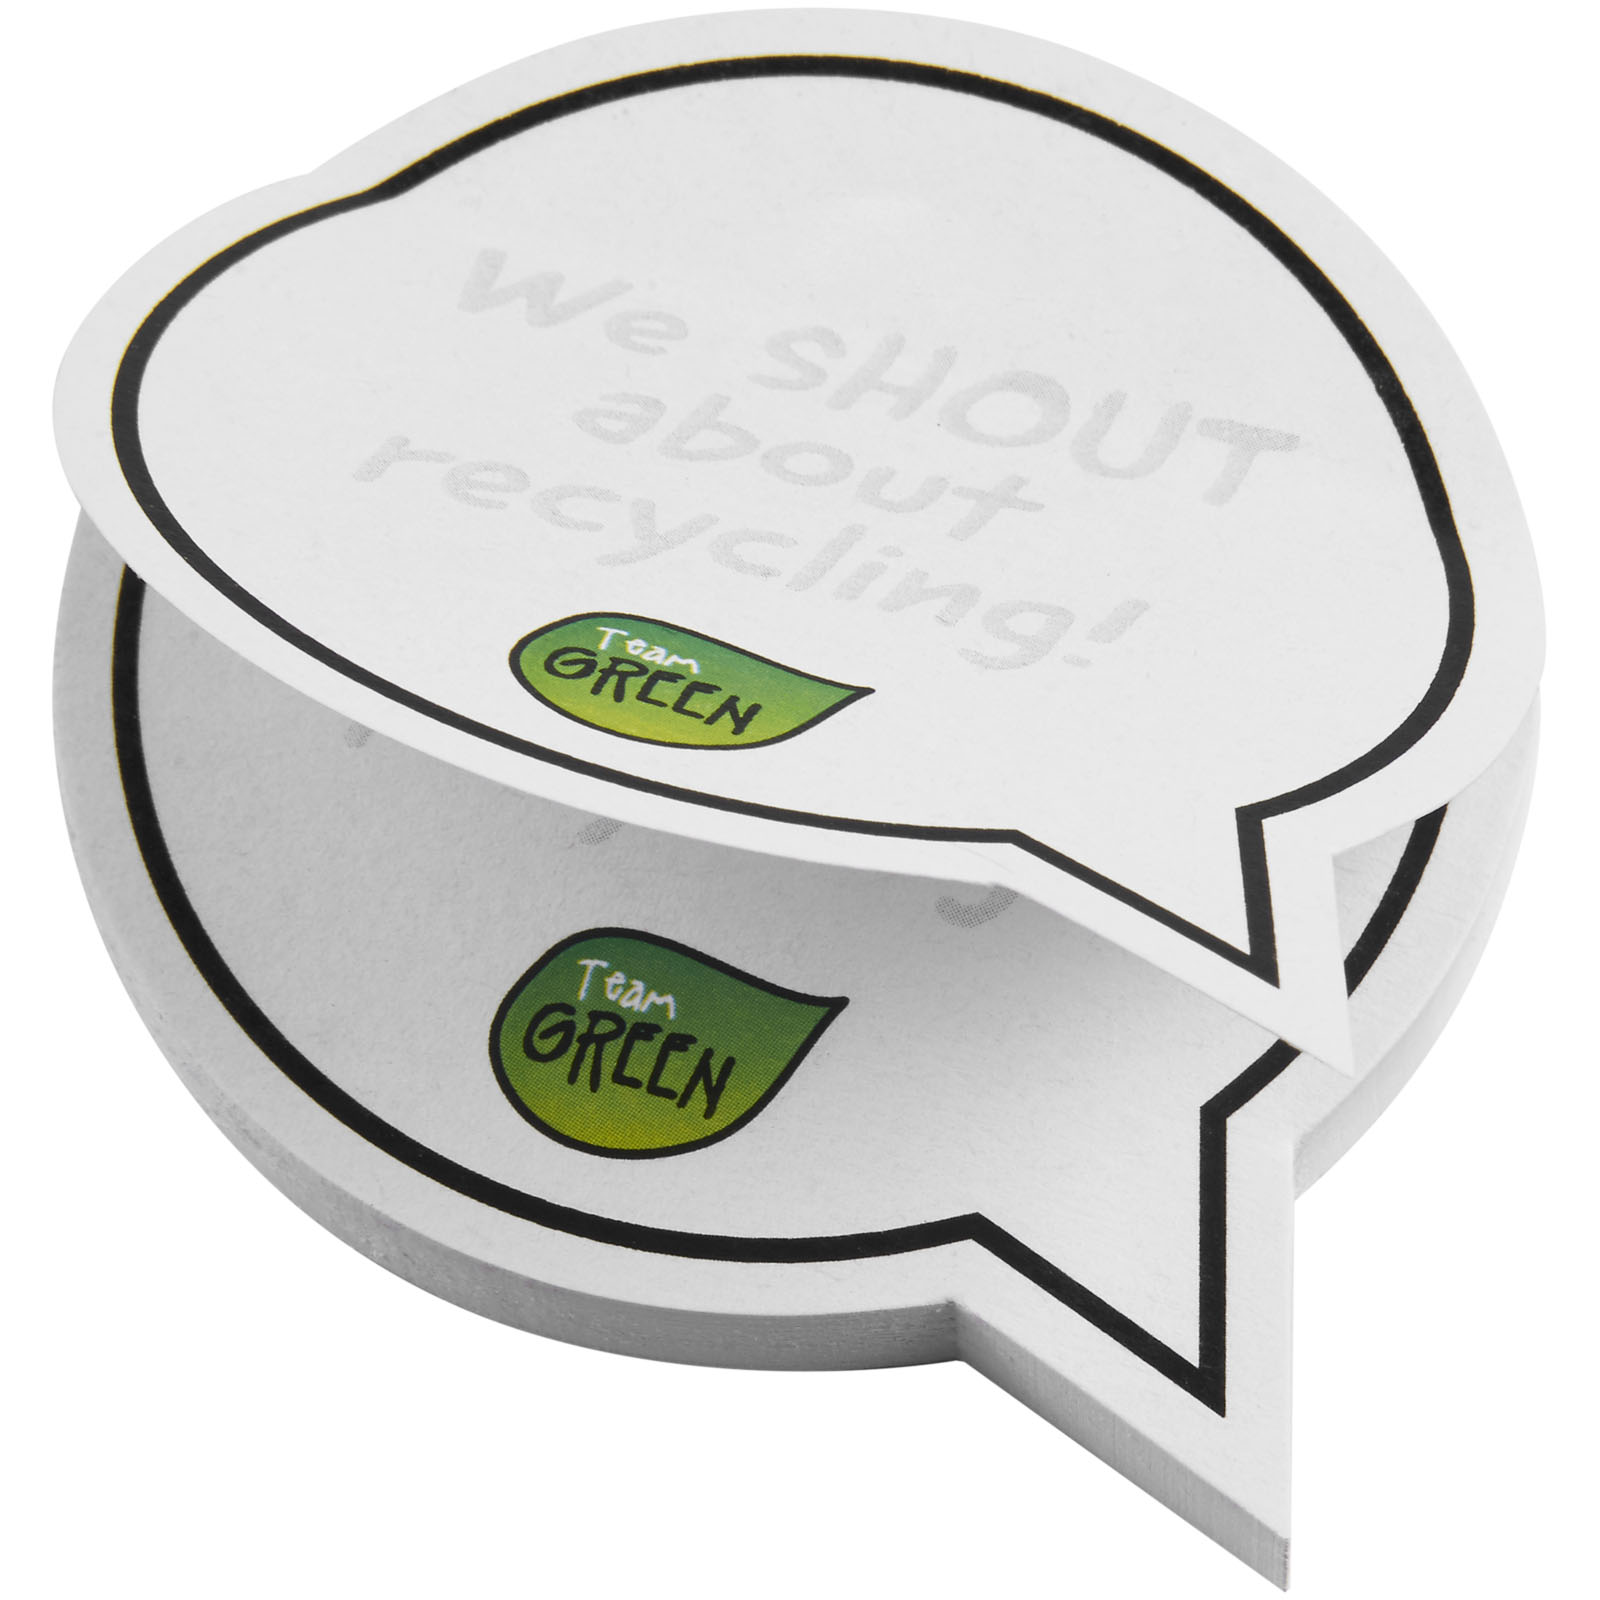 Advertising Sticky Notes - Sticky-Mate® speech bubble-shaped recycled sticky notes - 2